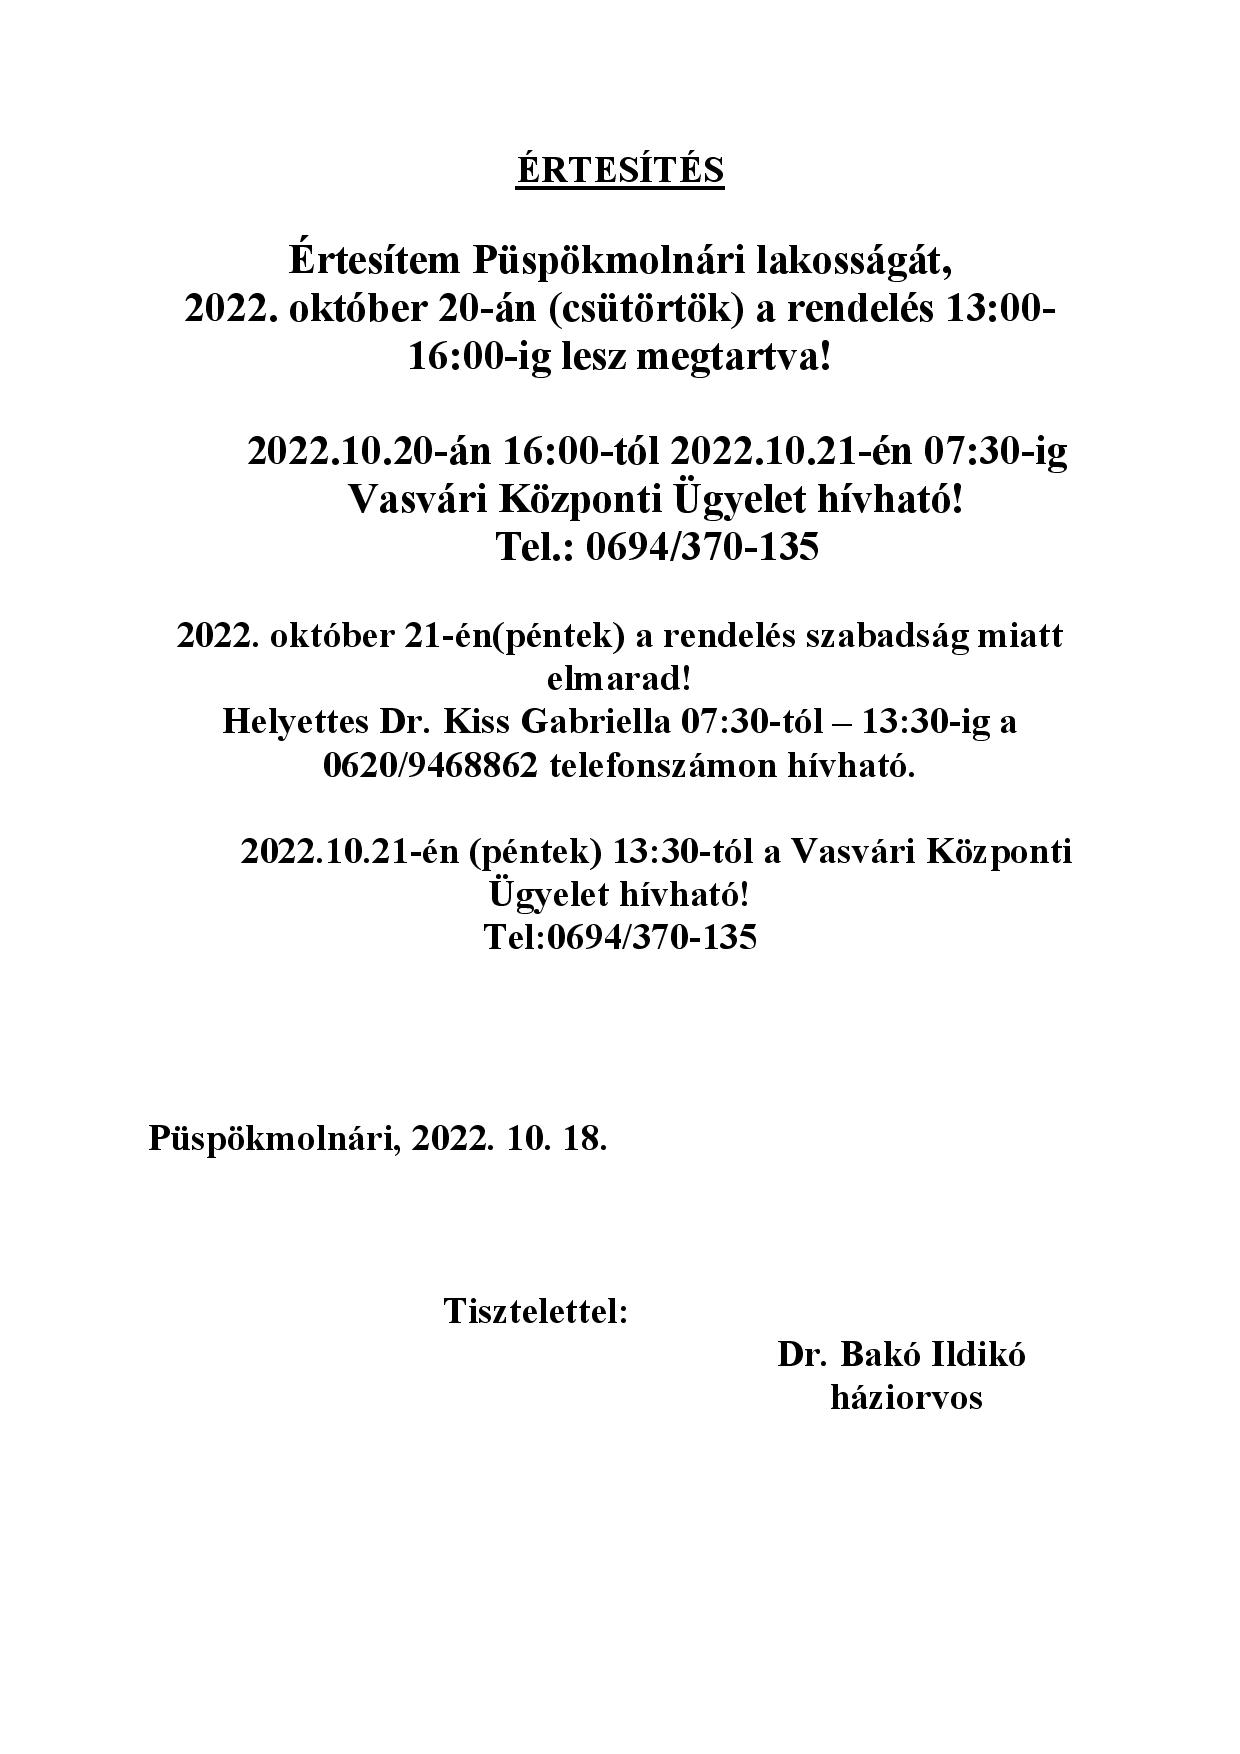 értesítés dr.bakó szabadság 2022. október18 page 001